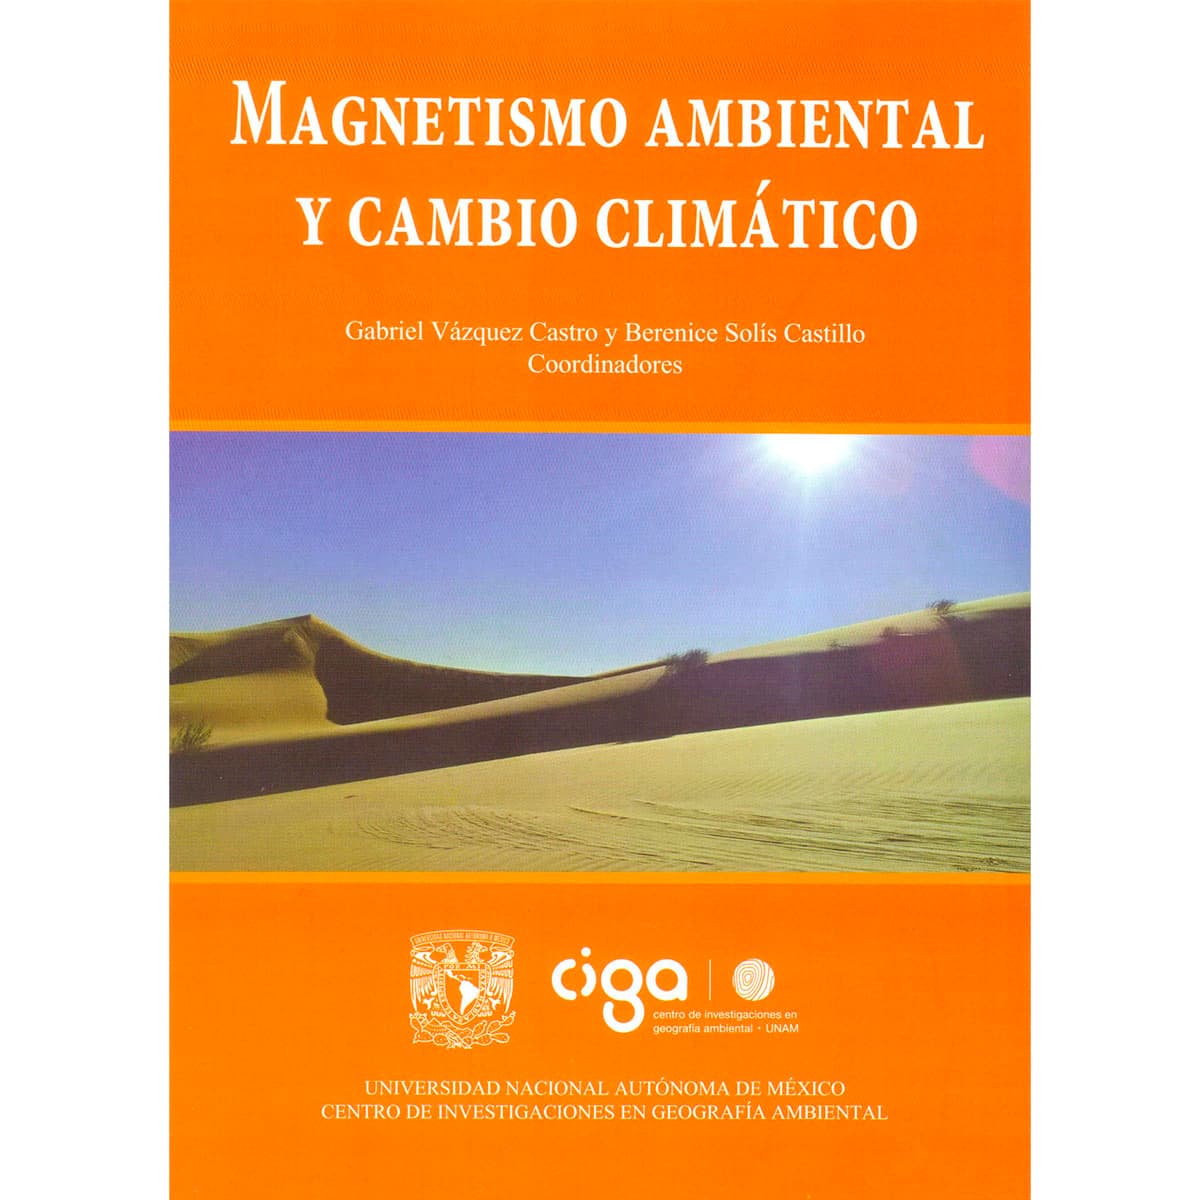 MAGNETISMO AMBIENTAL Y CAMBIO CLIMÁTICO